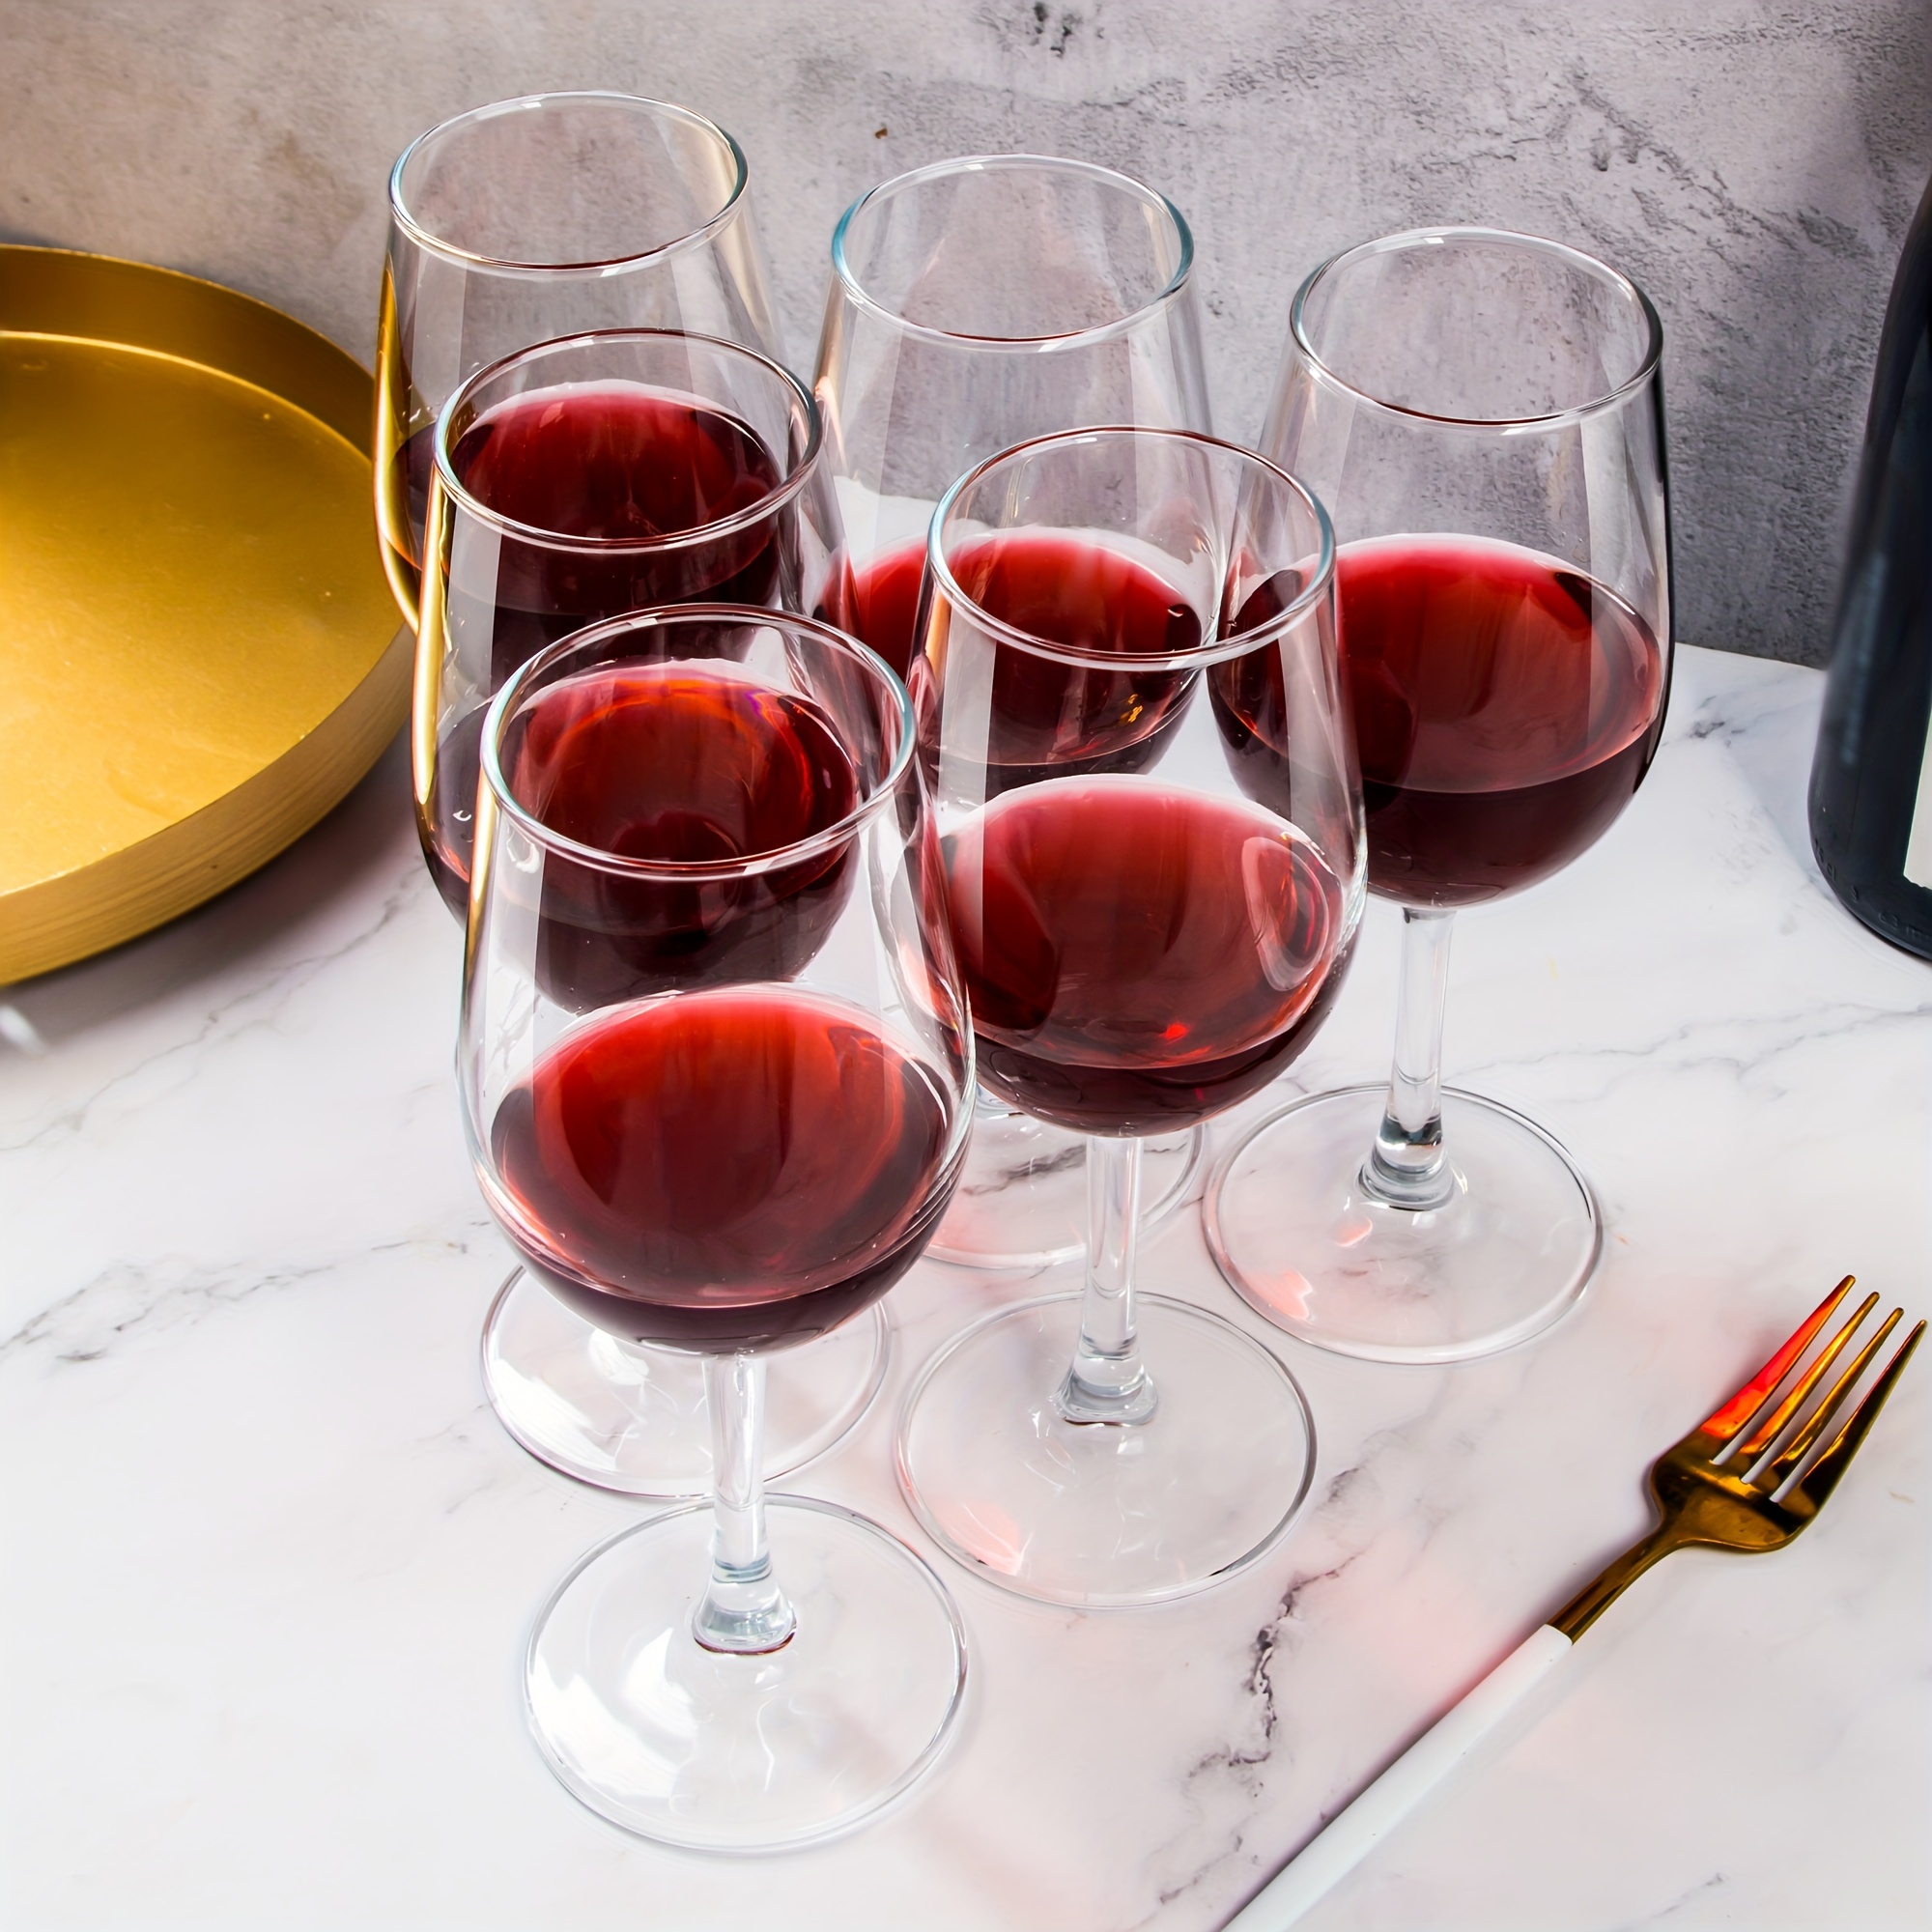 Dishwasher Safe Wine Glasses